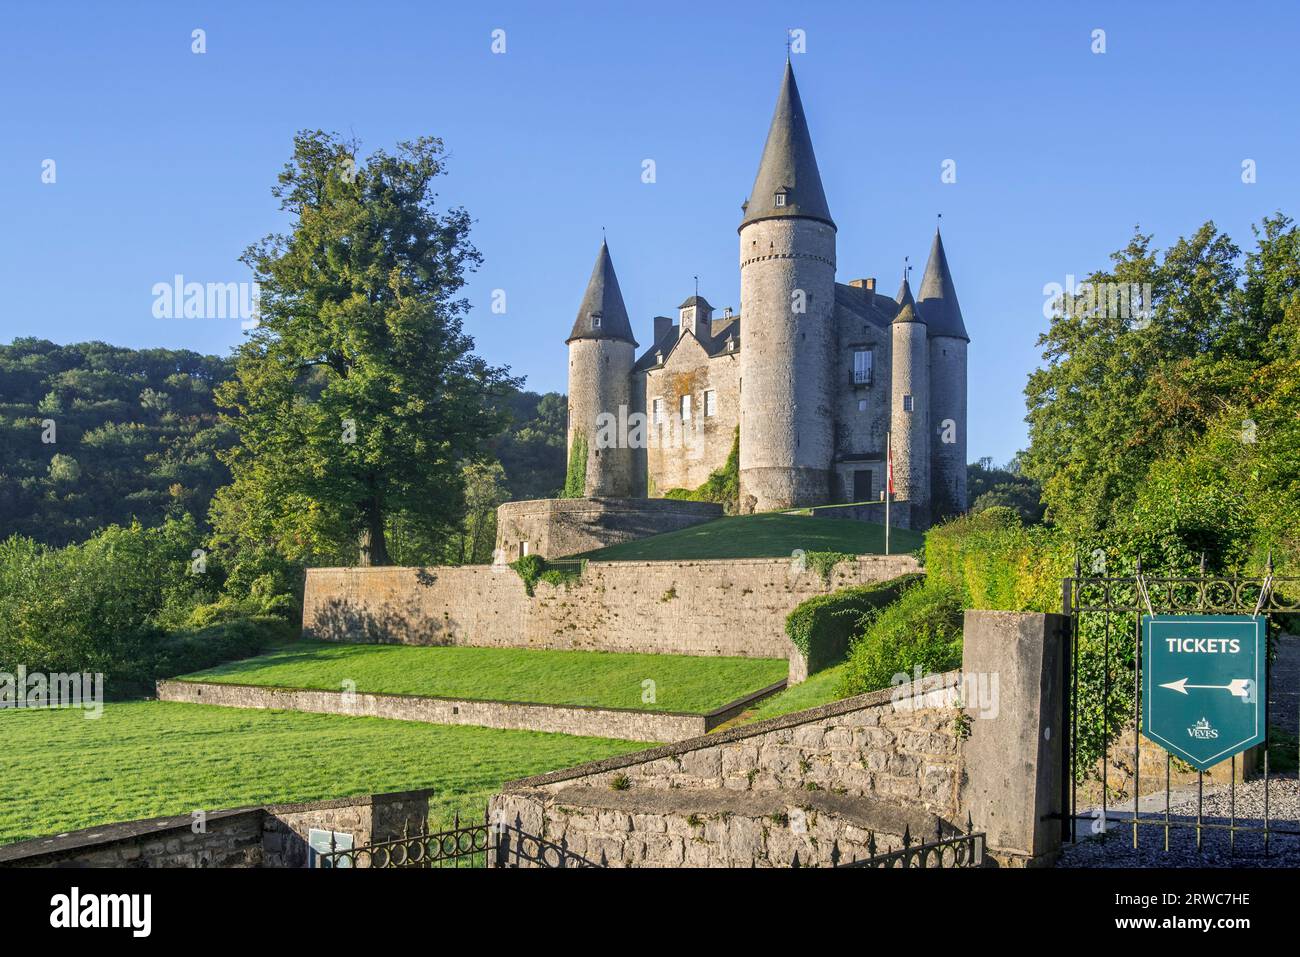 Château de Vêves del siglo XV, castillo medieval renacentista en Celles, Houyet en la provincia de Namur, Ardenas belgas, Valonia, Bélgica Foto de stock